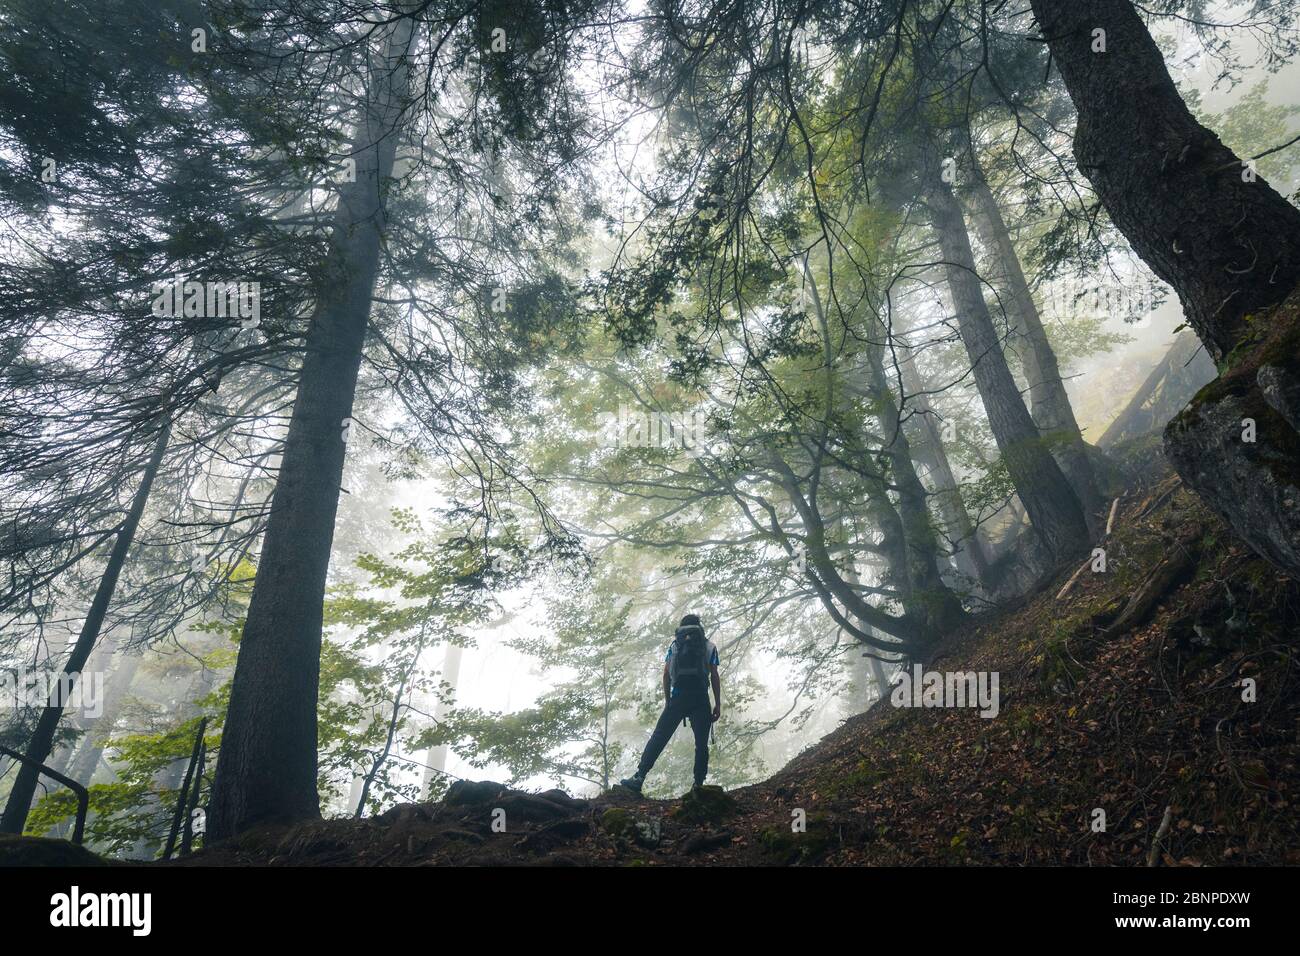 Junge Wanderer erkunden einen Buchenwald an einem düsteren Tag, san lucano Tal, taibon agordino, belluno, venetien, italien Stockfoto